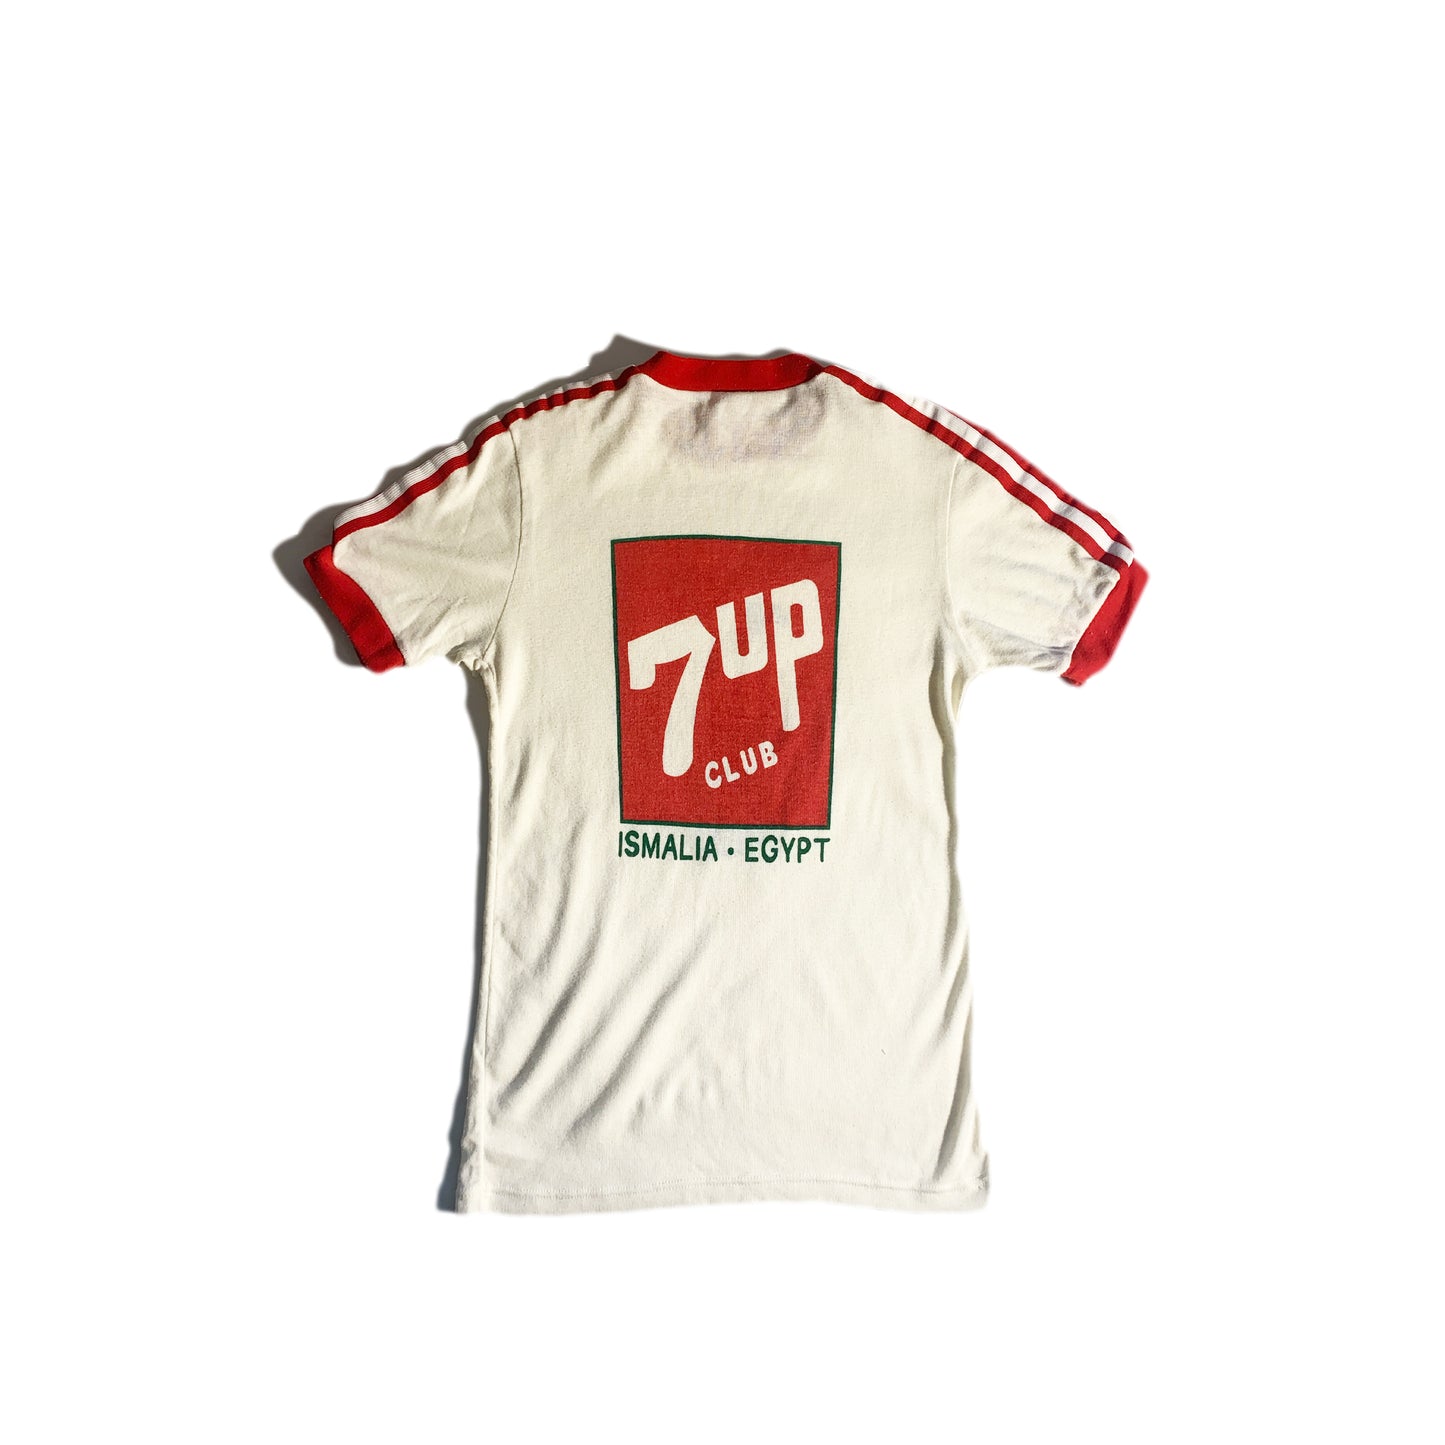 Vintage 7-Up UN T-Shirt